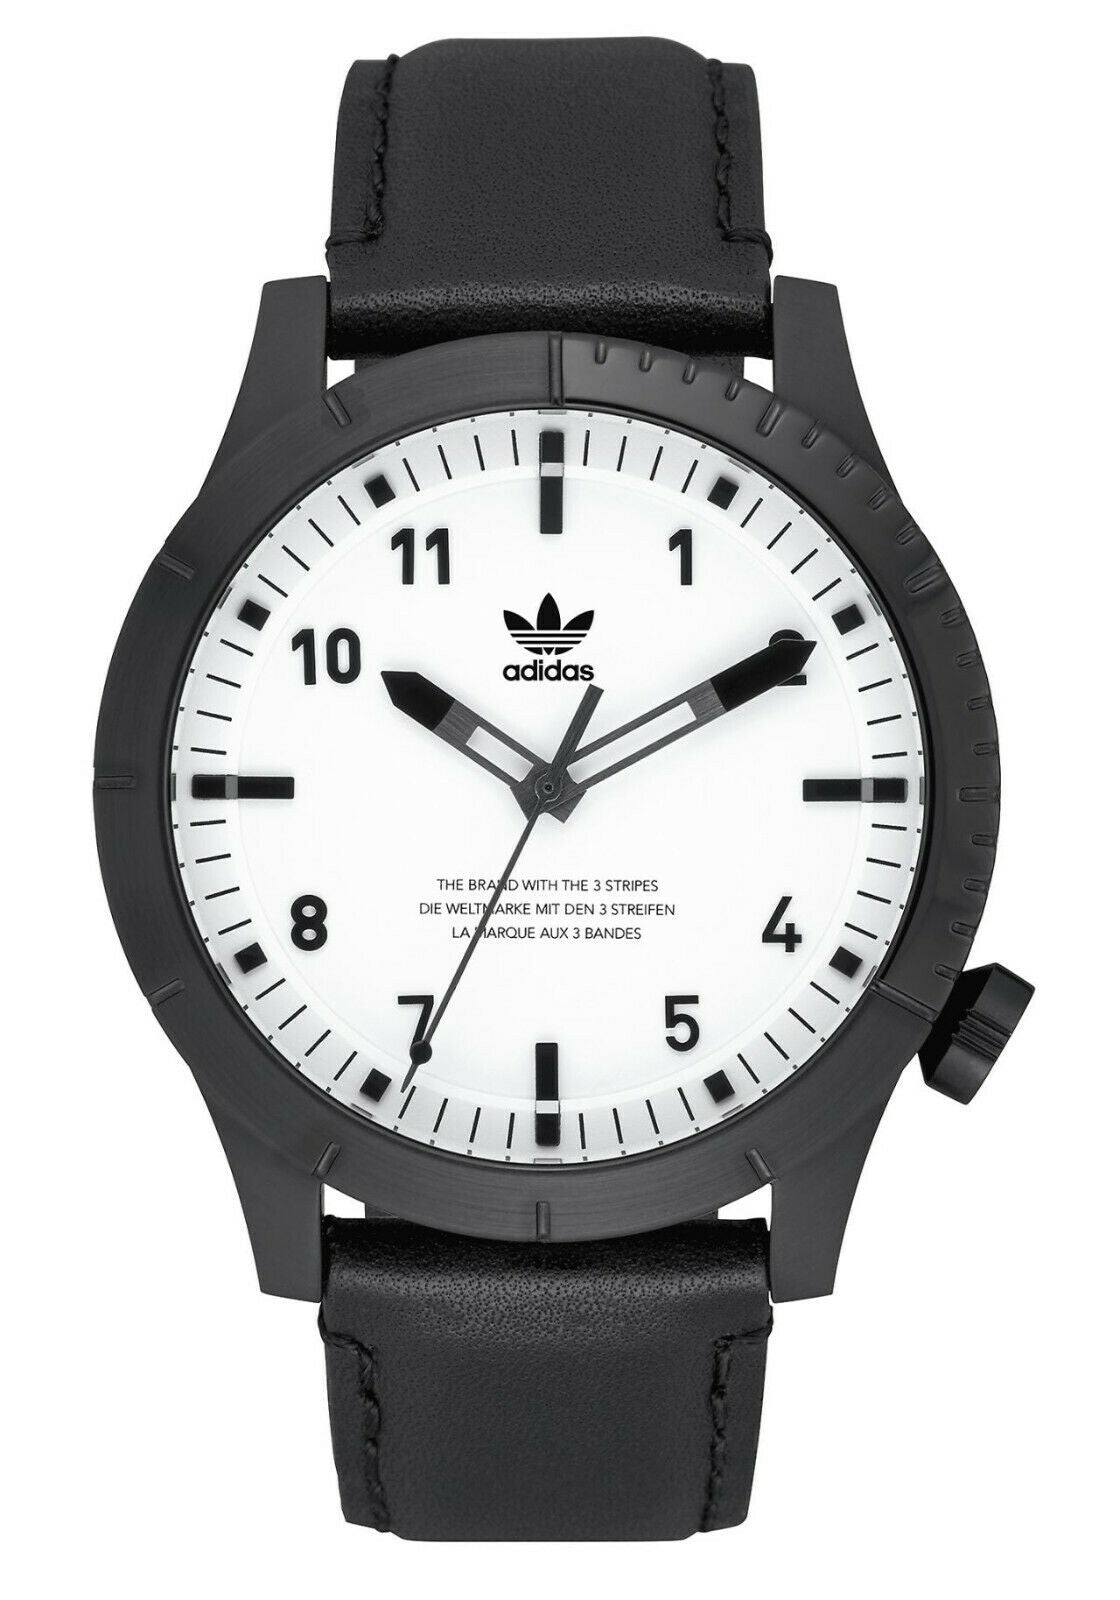 Adidas Originals Cypher LX1 - Uhr - black/white - Art. Z06-005 - Ø 42mm